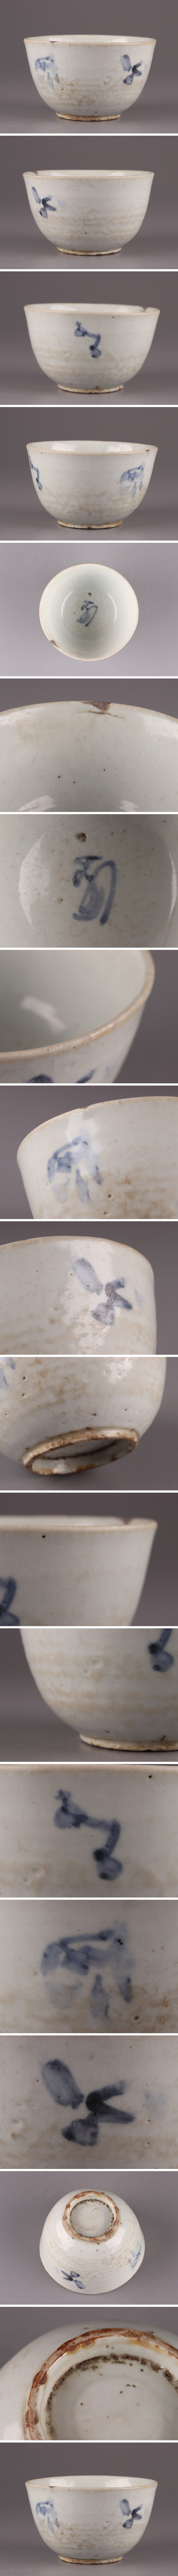 人気定番安い古美術 朝鮮古陶磁器 李朝 白磁 染付 茶碗 時代物 極上品 初だし品 4180 李朝